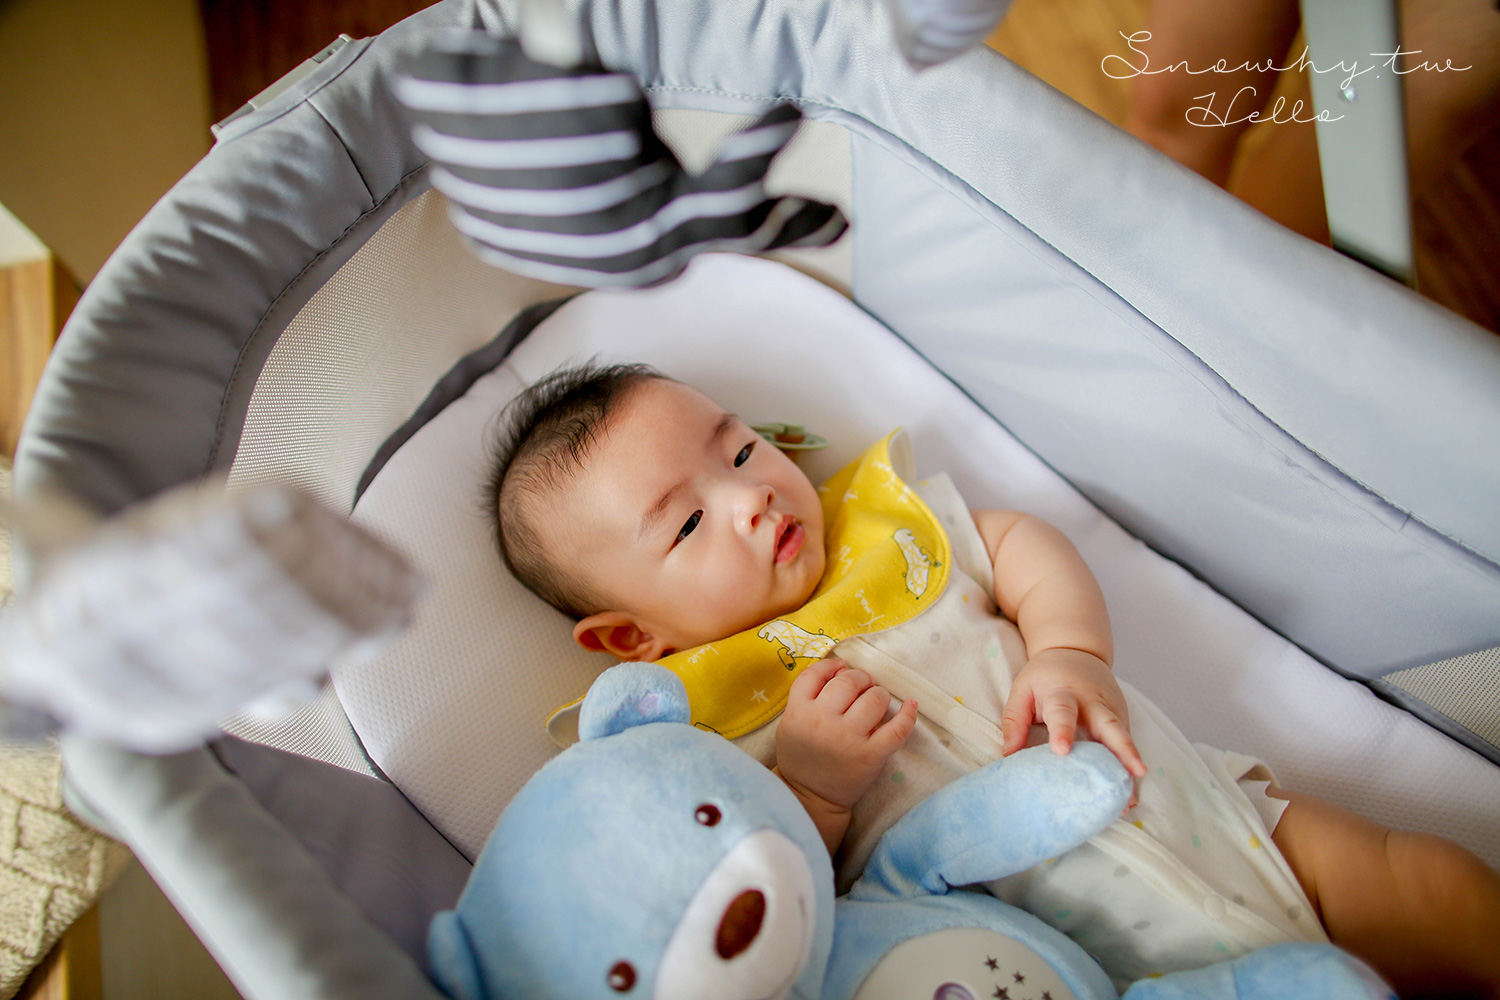 義大利 Chicco Baby Hug ,4合1餐椅,嬰兒安撫床,彩虹投射甜蜜晚安熊,育兒神器 嬰兒床,餐椅,寶寶餐椅,Baby Hug